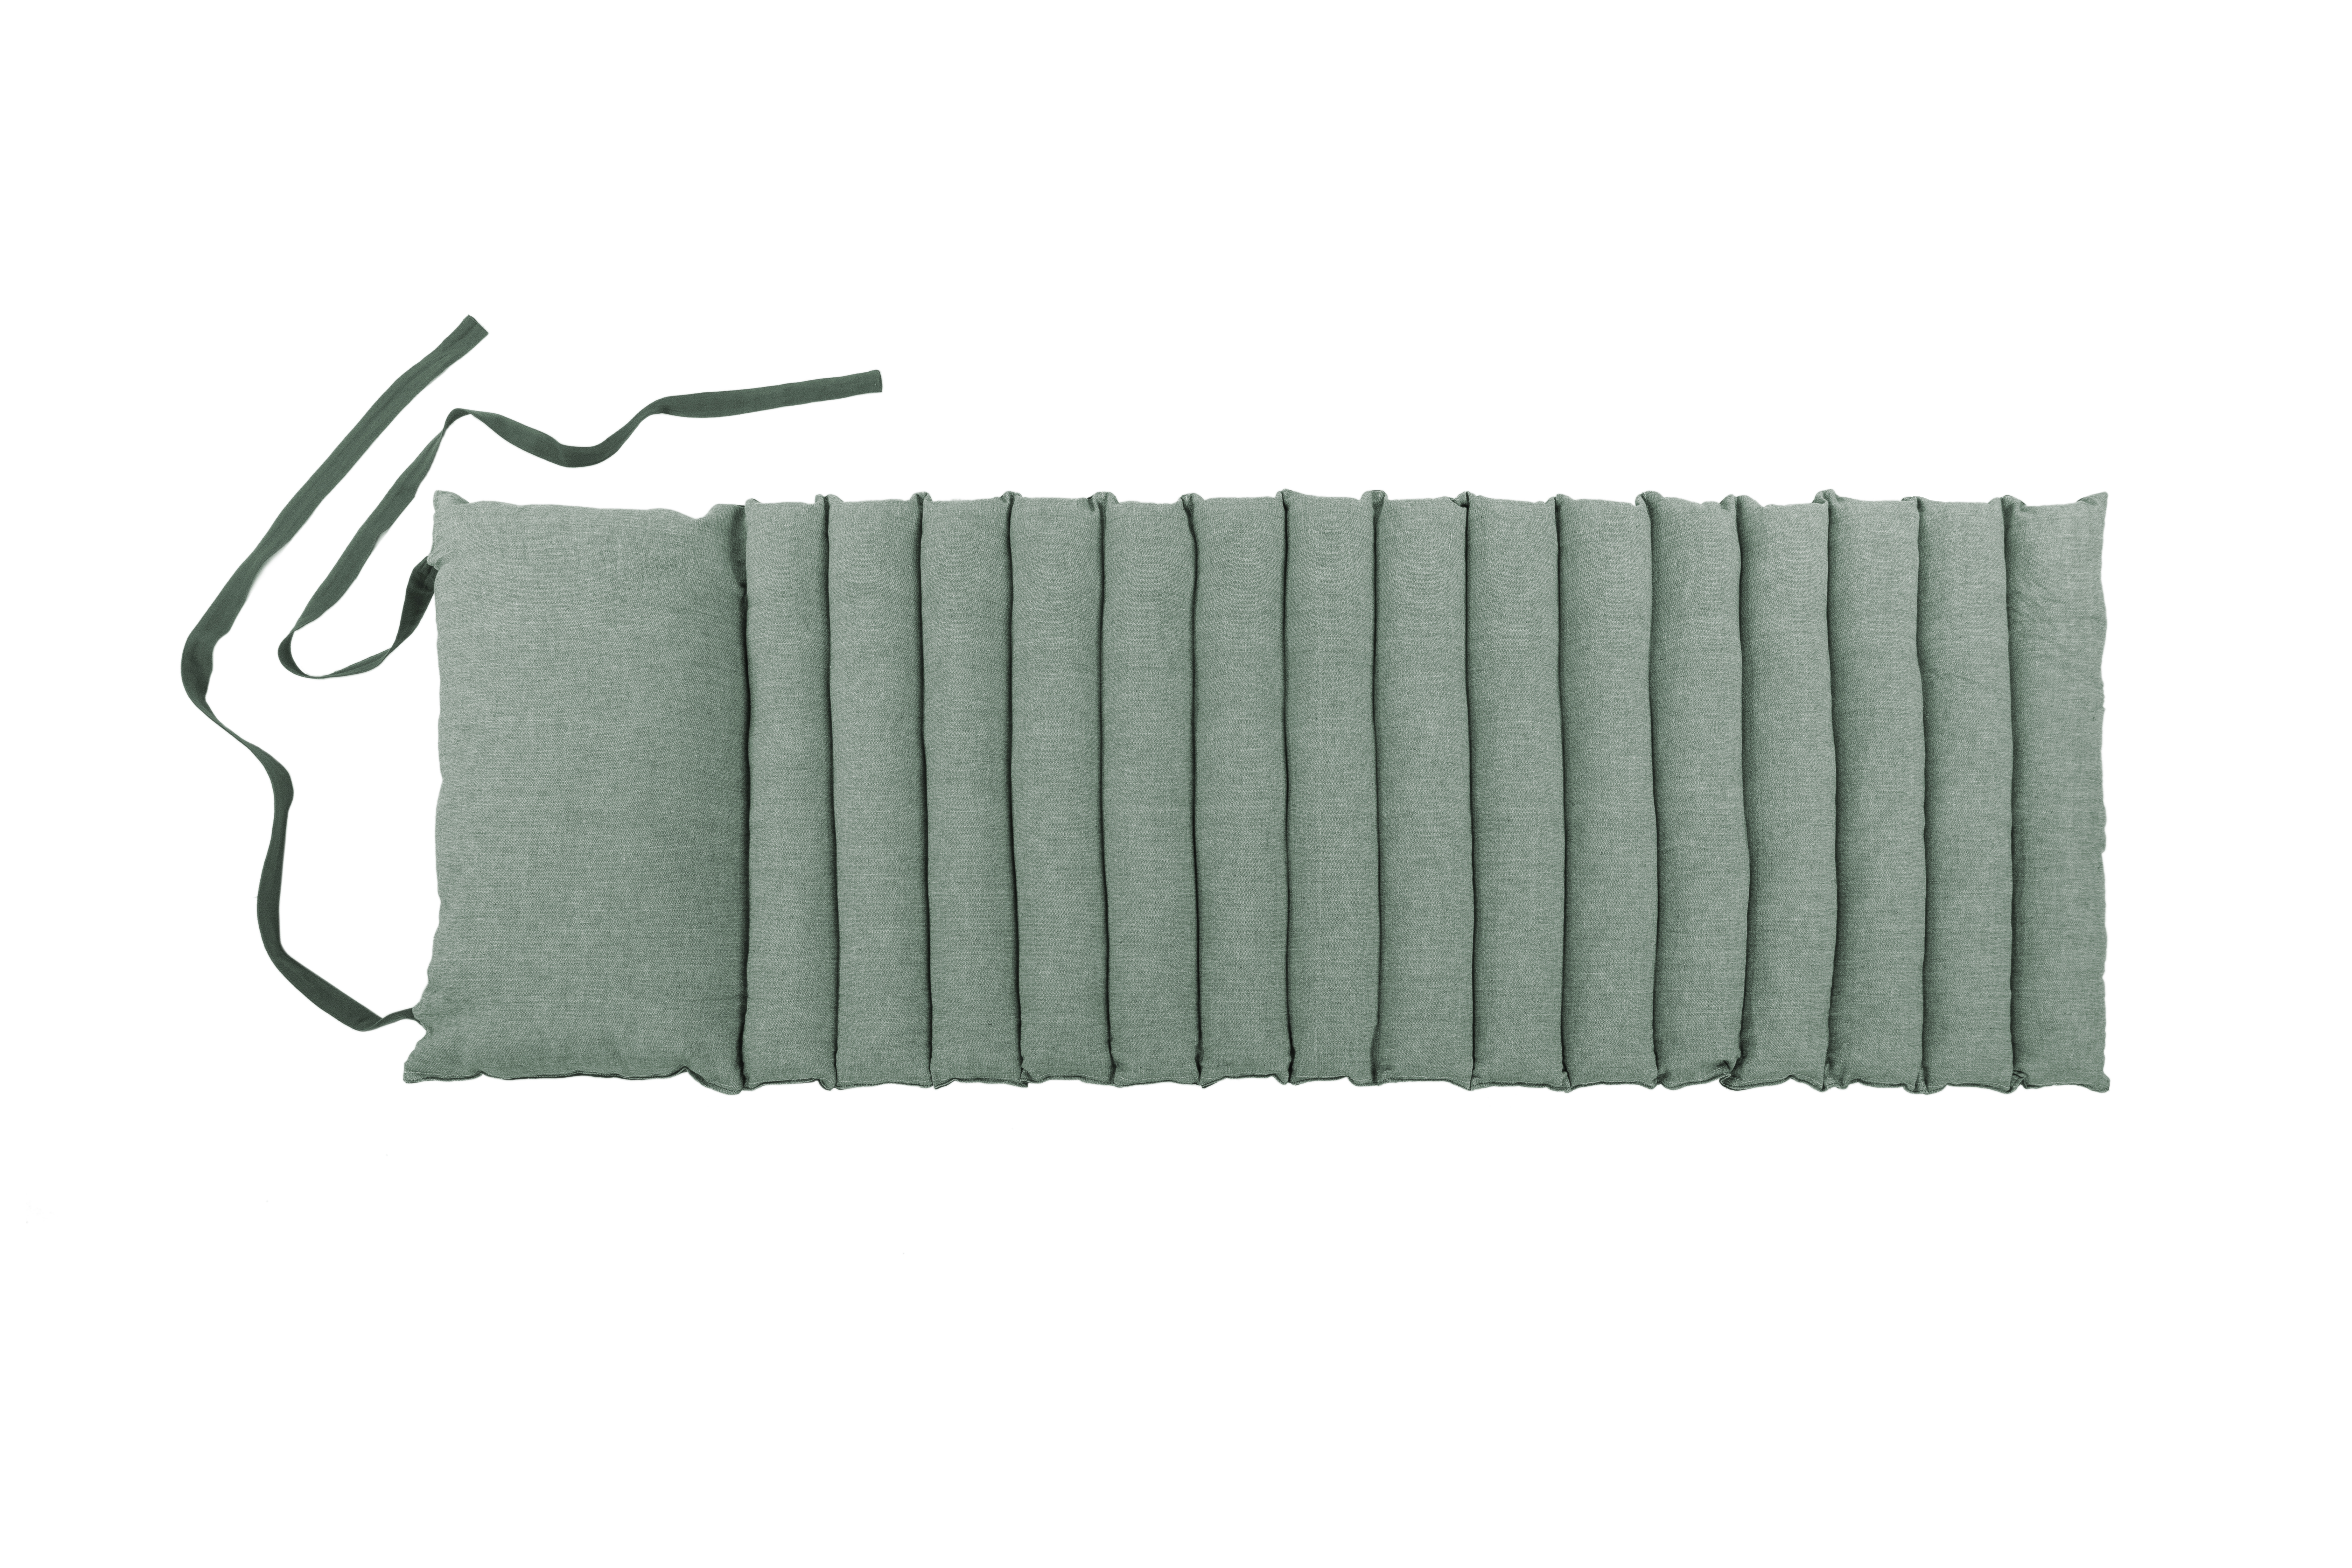 Tapis de futon CHAMBRAY - 180x60cm, vert